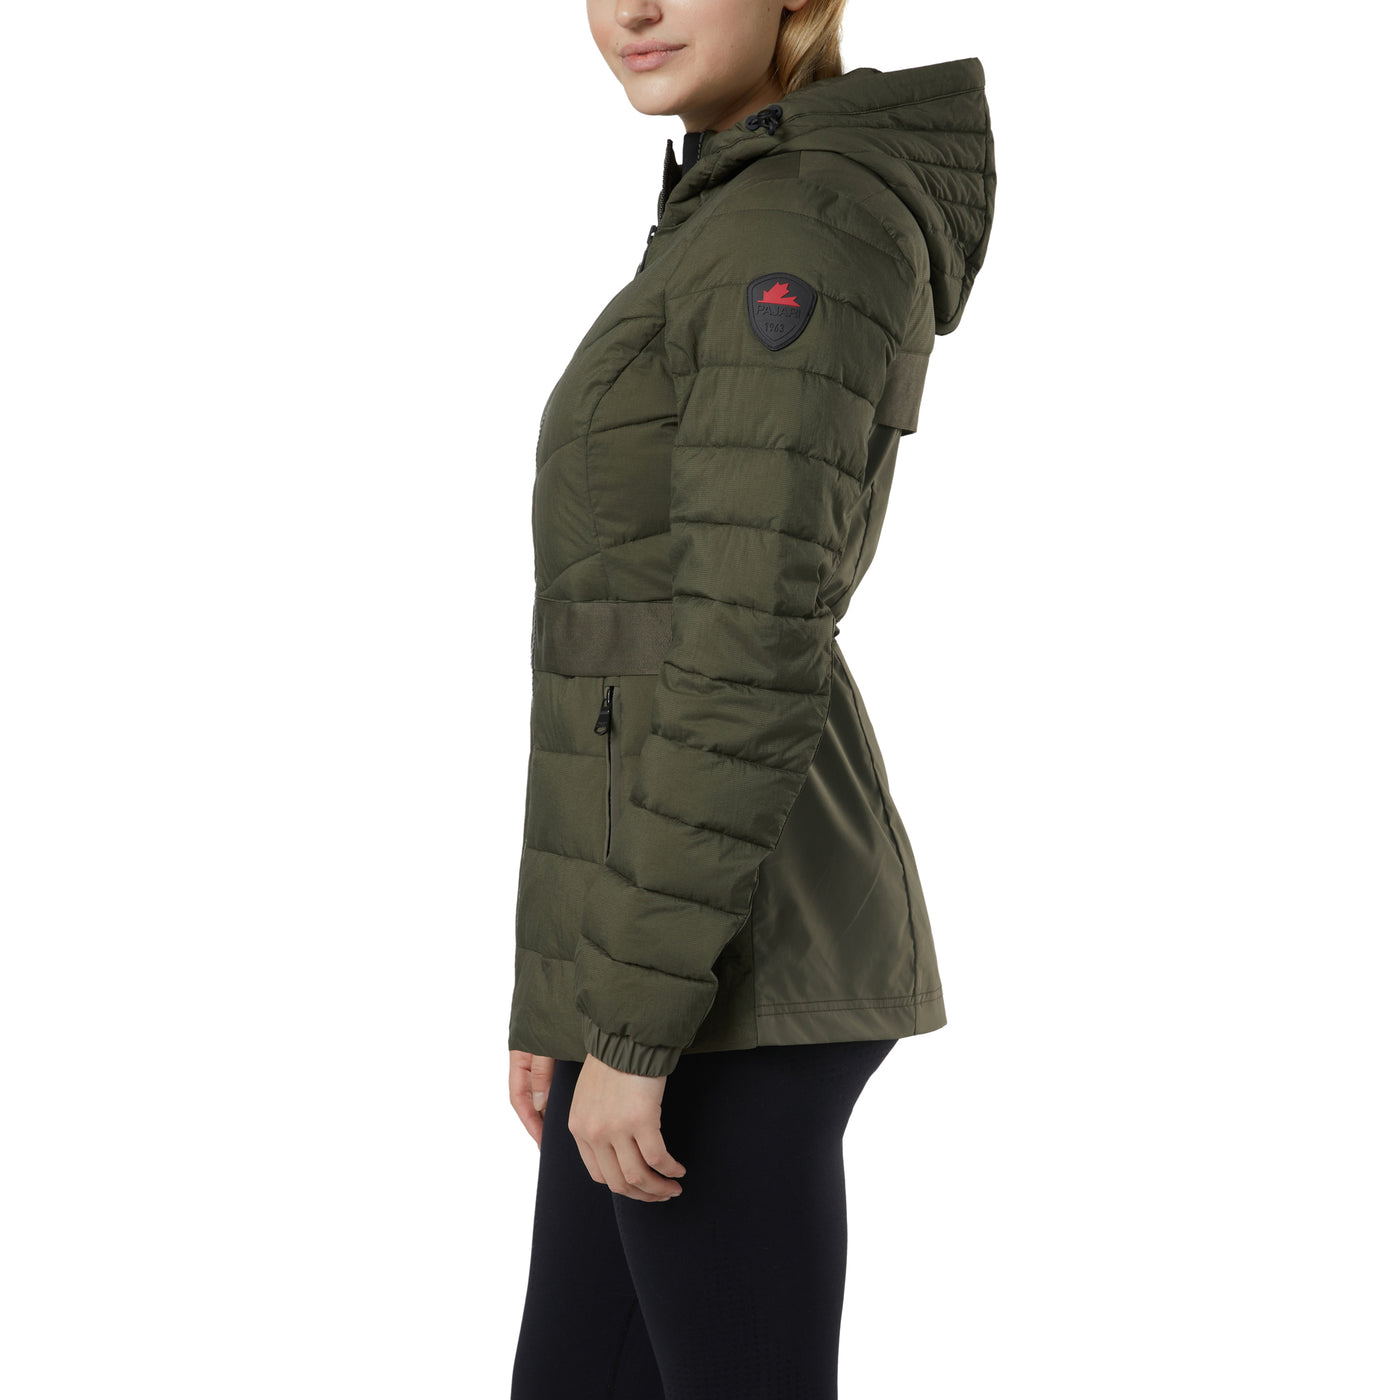 Corella Women's Lightweight Packable Jacket